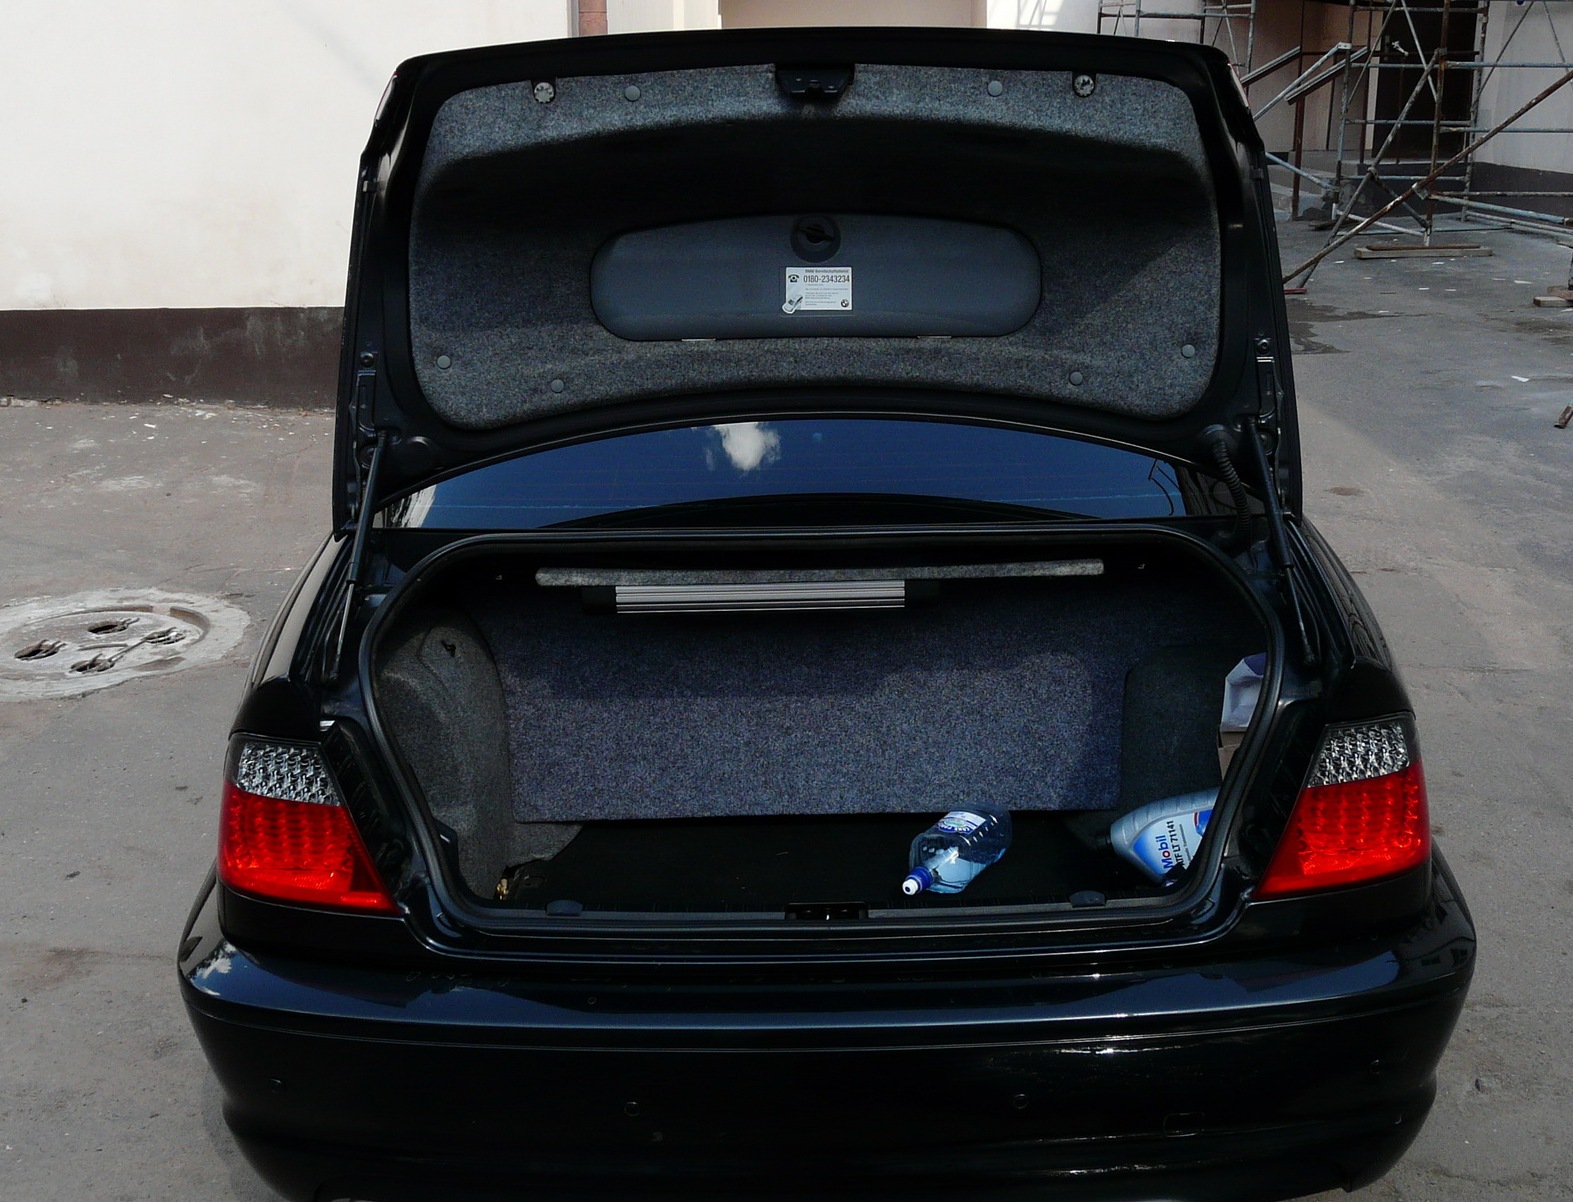 Не работает багажник бмв. БМВ без багажника. Инструменты в крышке багажника БМВ. BMW 1 Series инструменты в багажнике. БМВ С деньгами в багажнике.